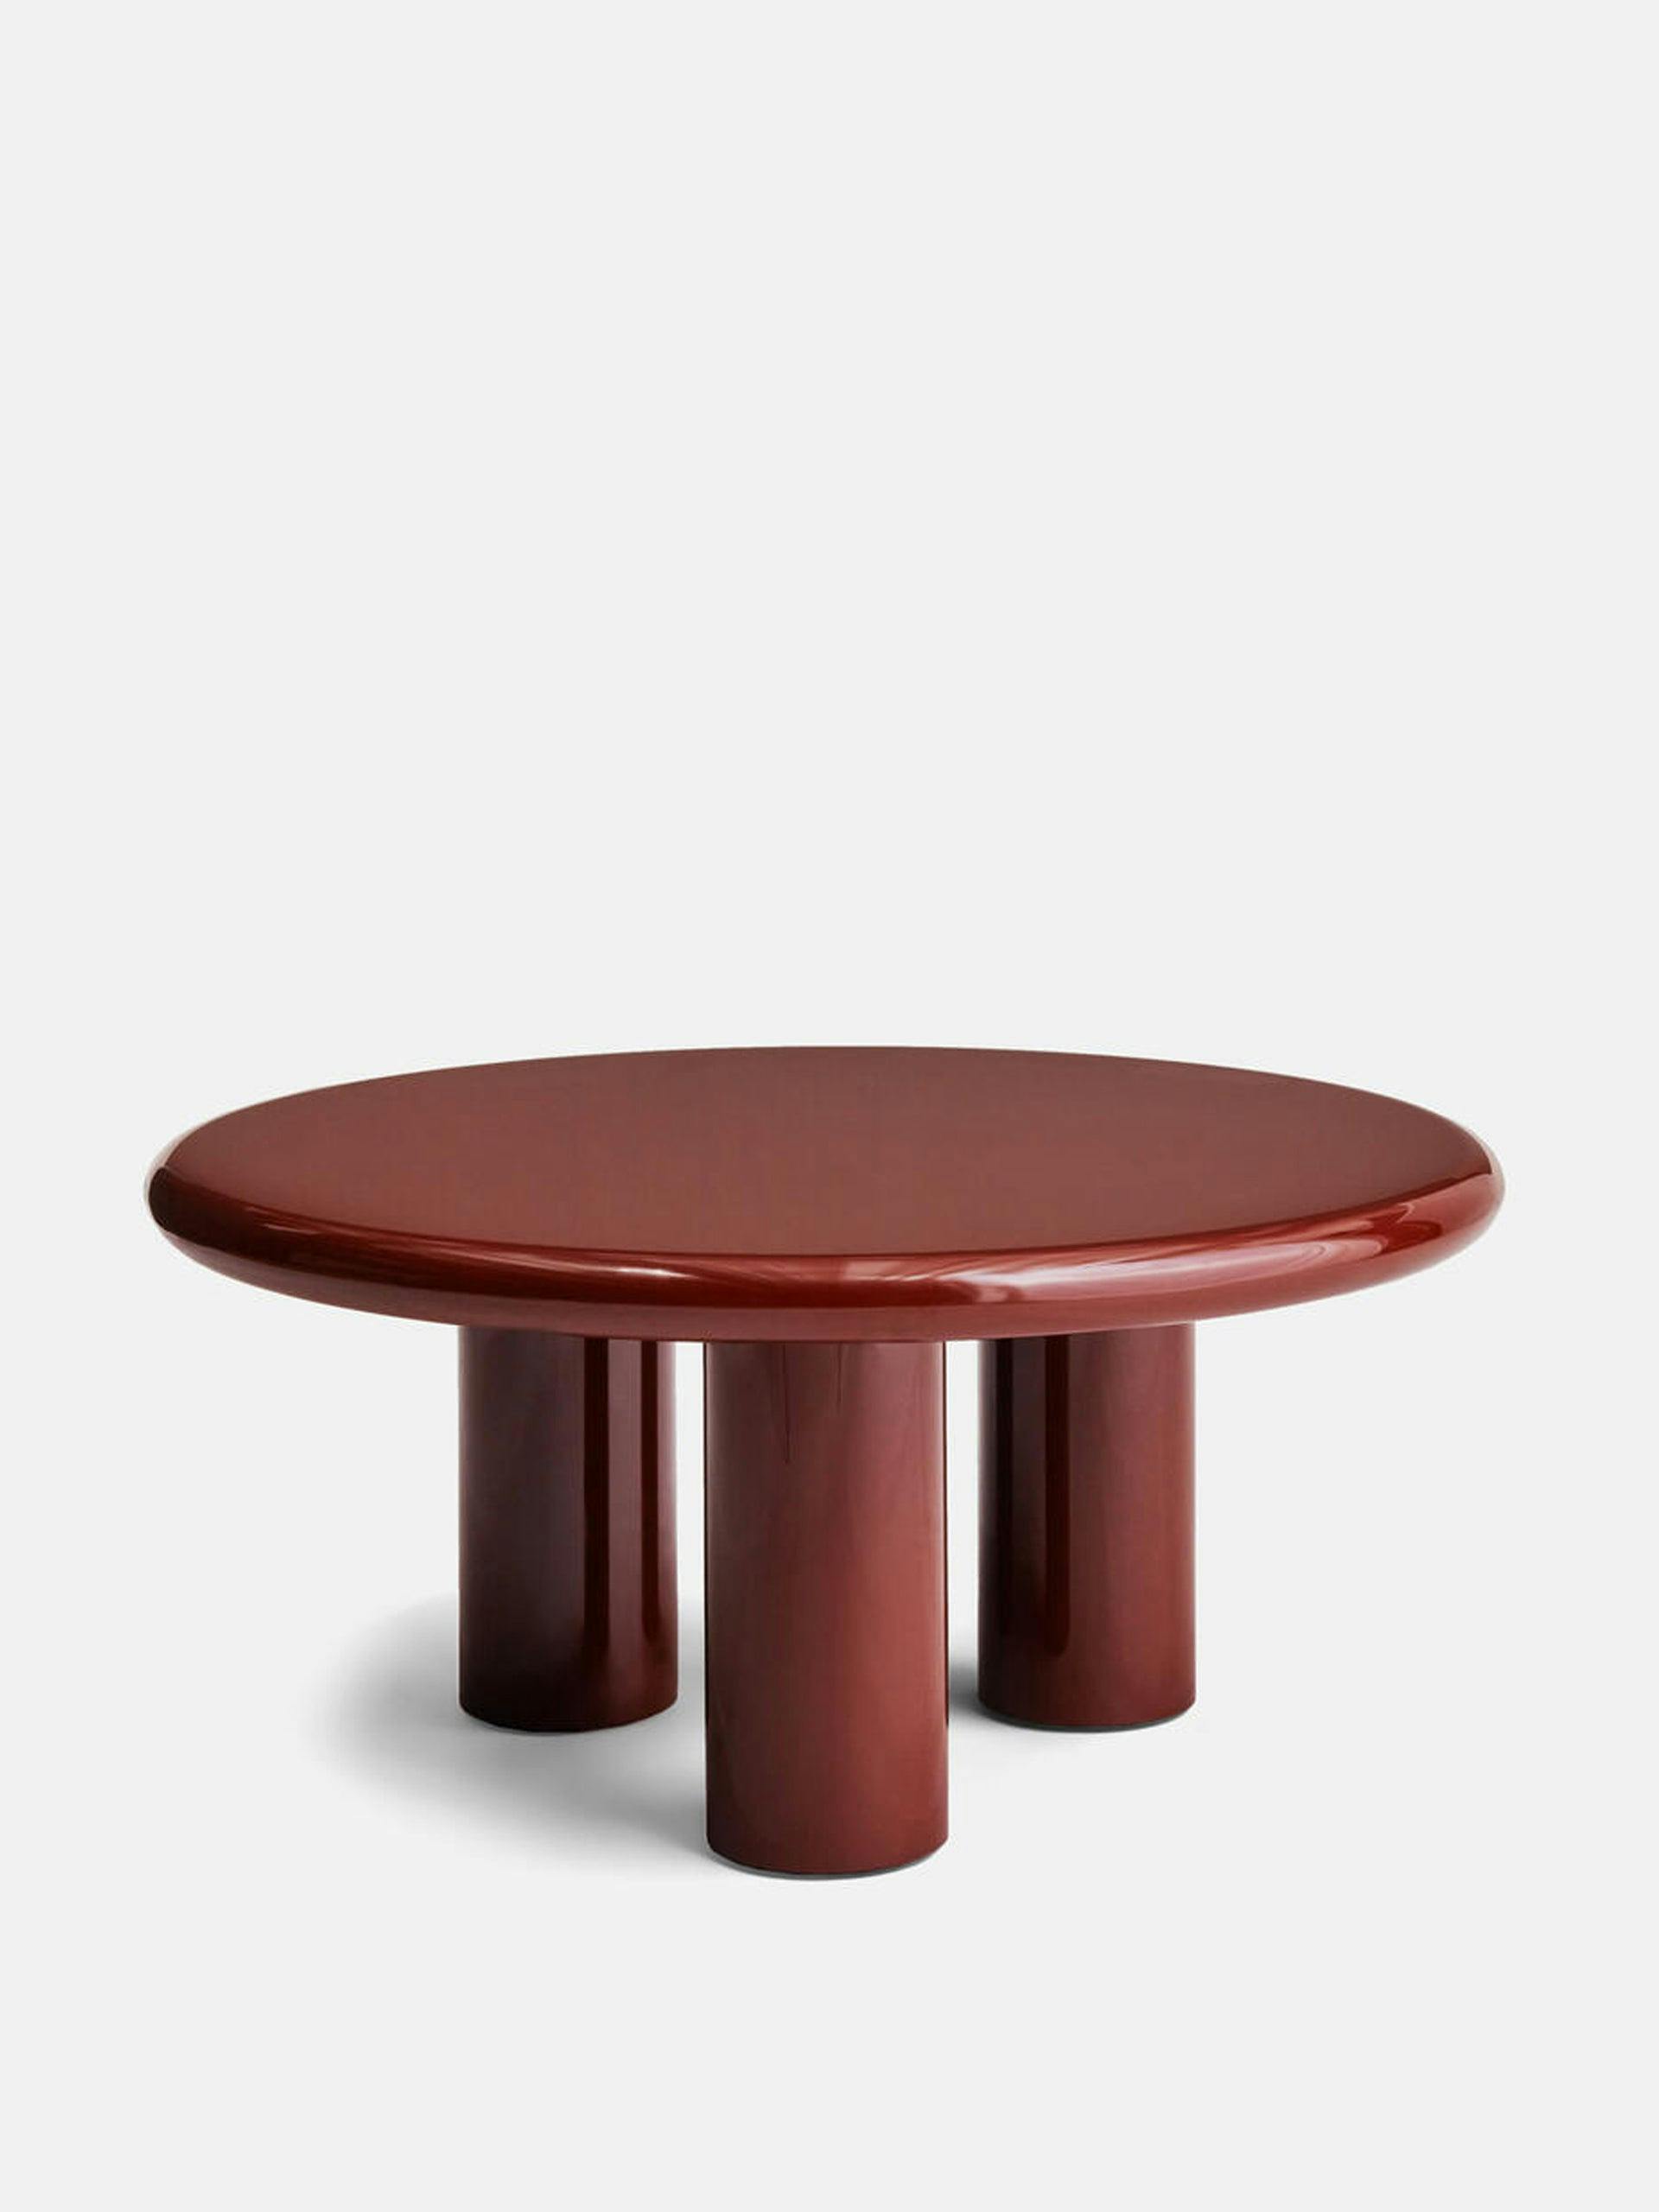 Geona coffee table